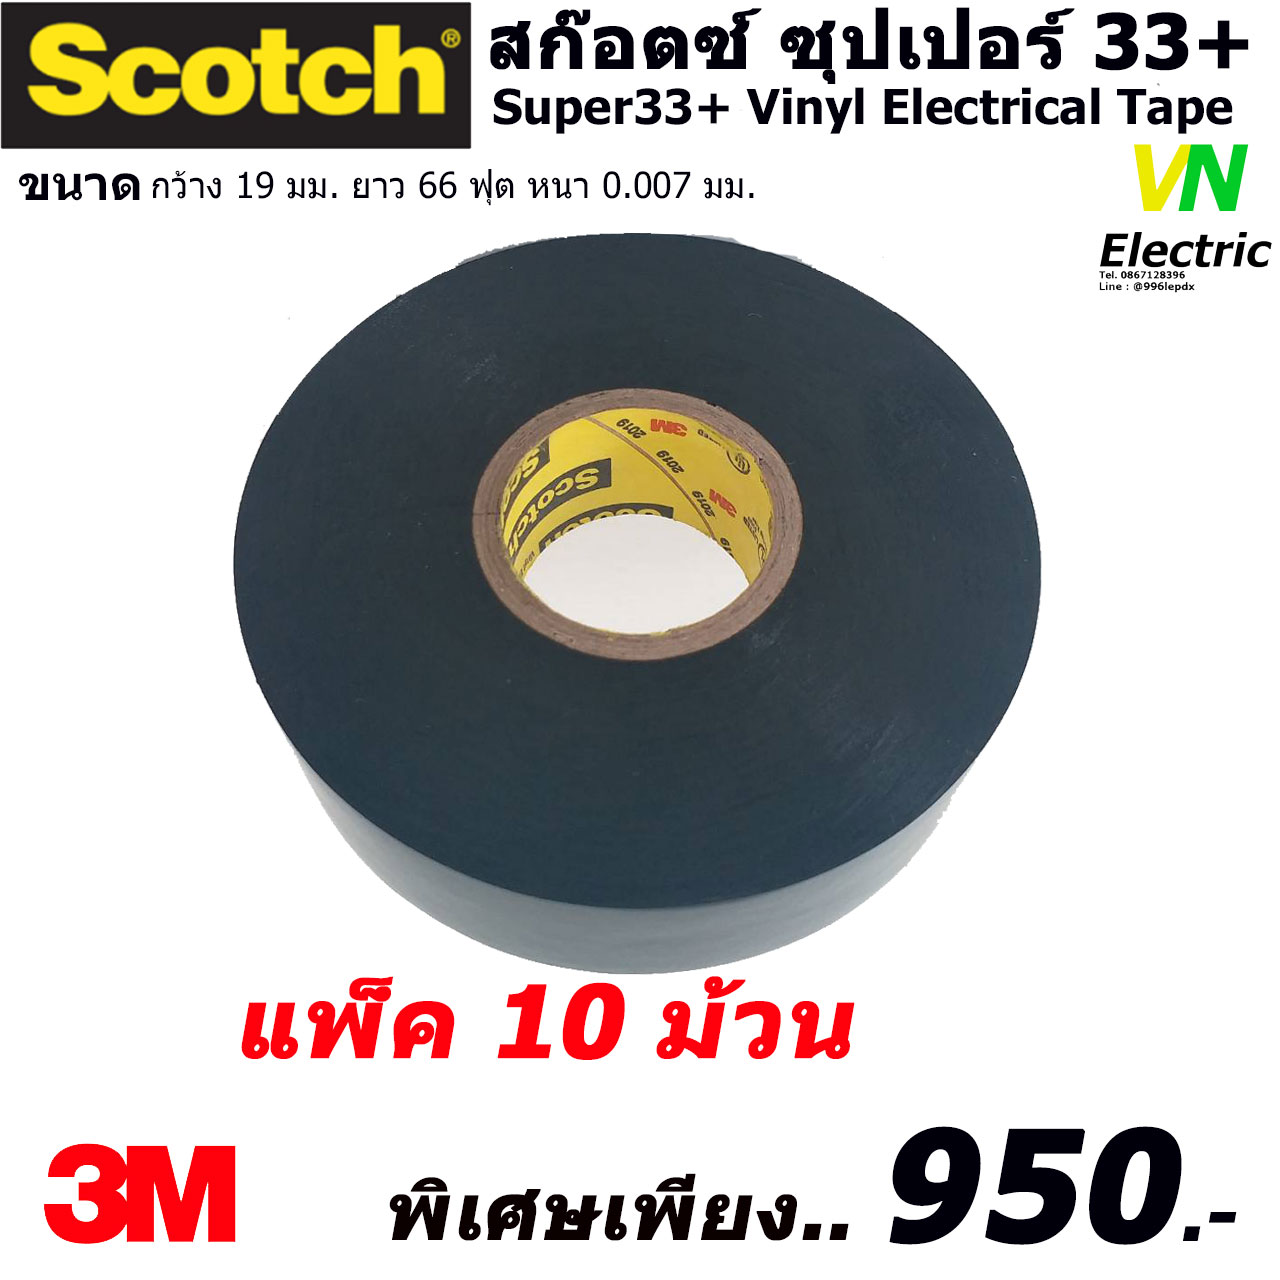 สก๊อตช์เทป ซุปเปอร์ 33+ Scotct Super33+ Vinyl Electrical Tape ขนาด กว้าง 19 มม. ยาว 66 ฟุต หนา 0.007 มม. แพ็ค 10 ม้วน